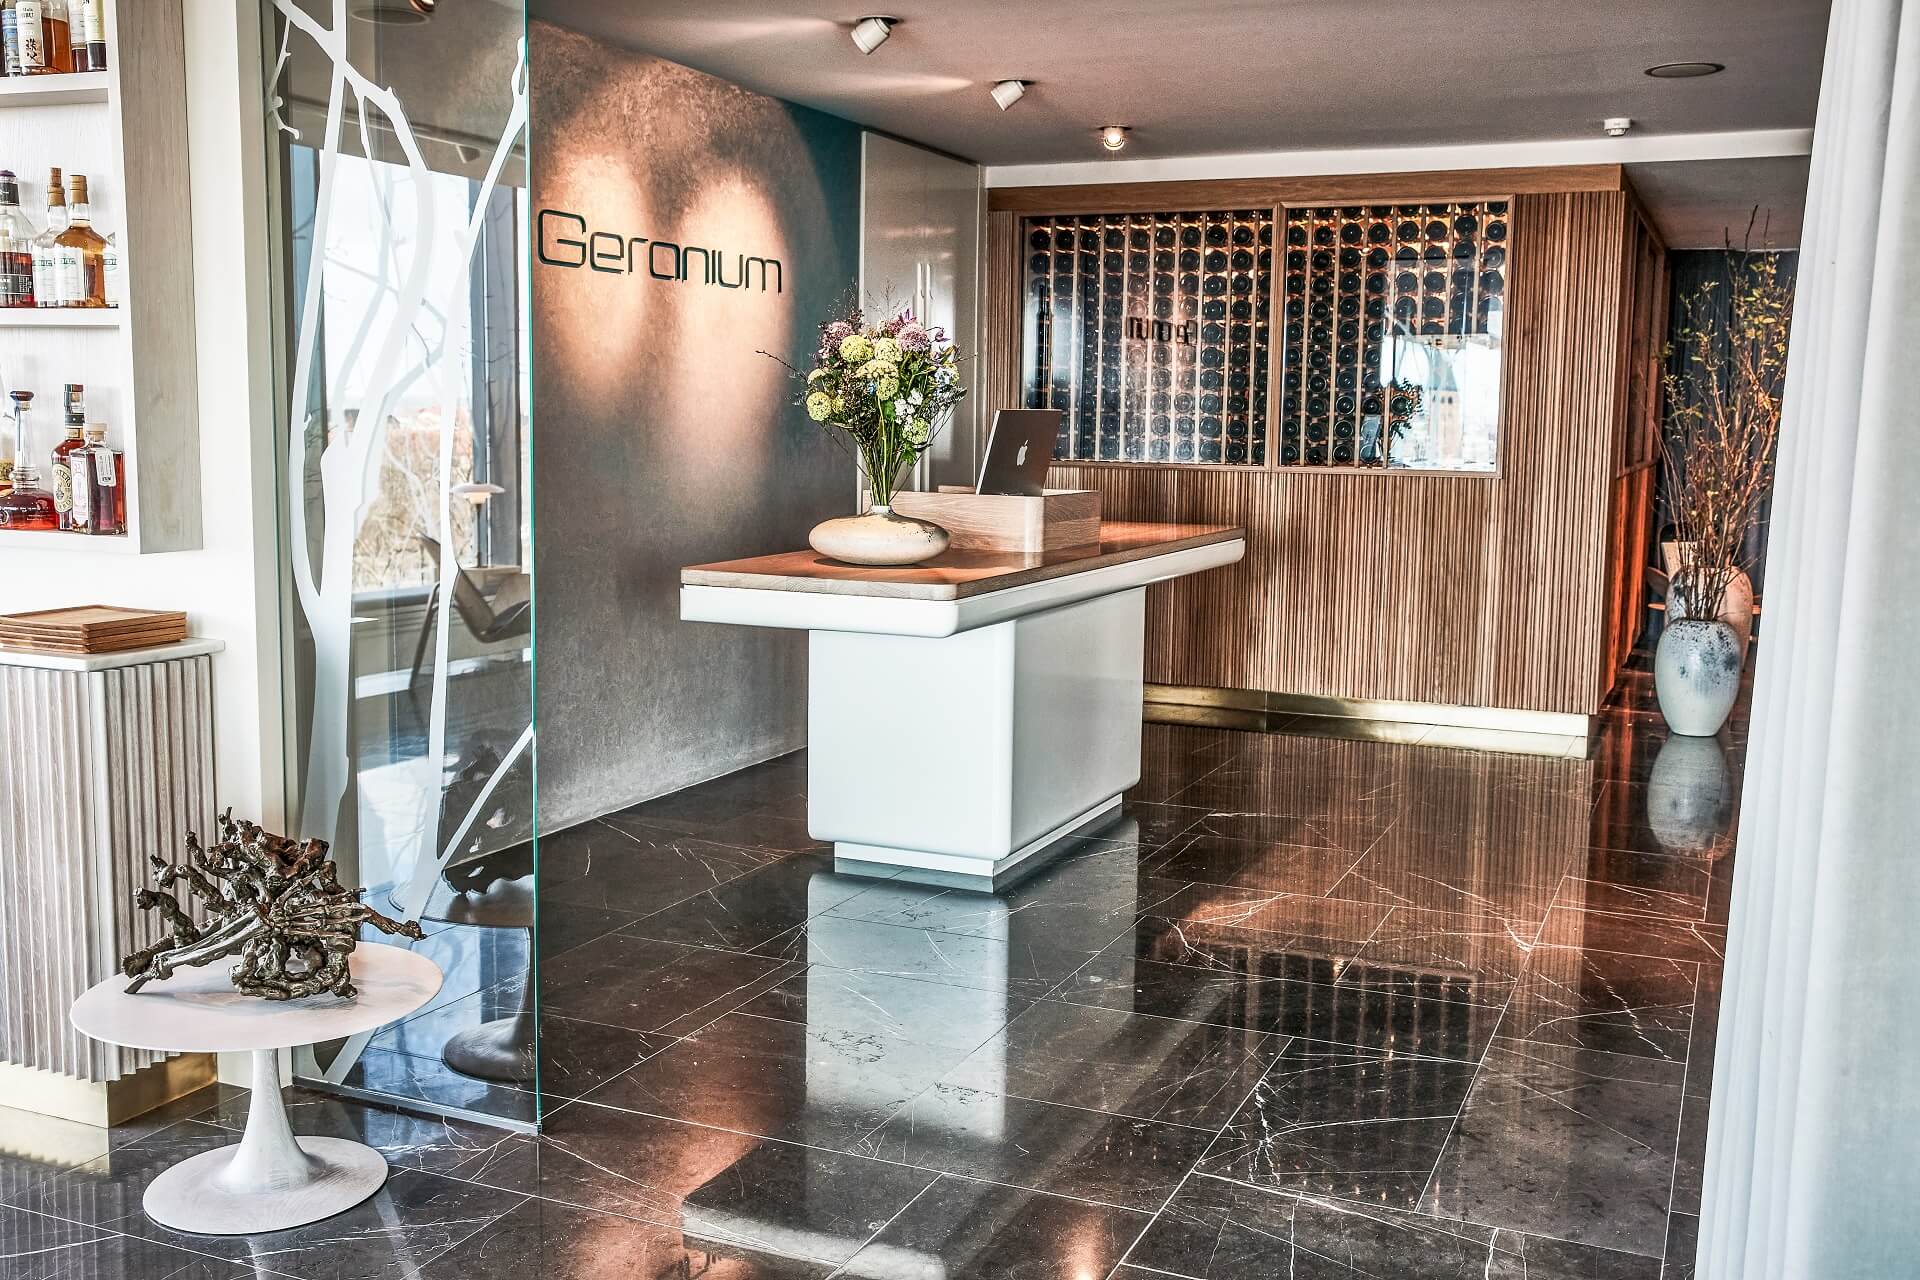 Restaurant Geranium located in the soccer stadium Copenhagen